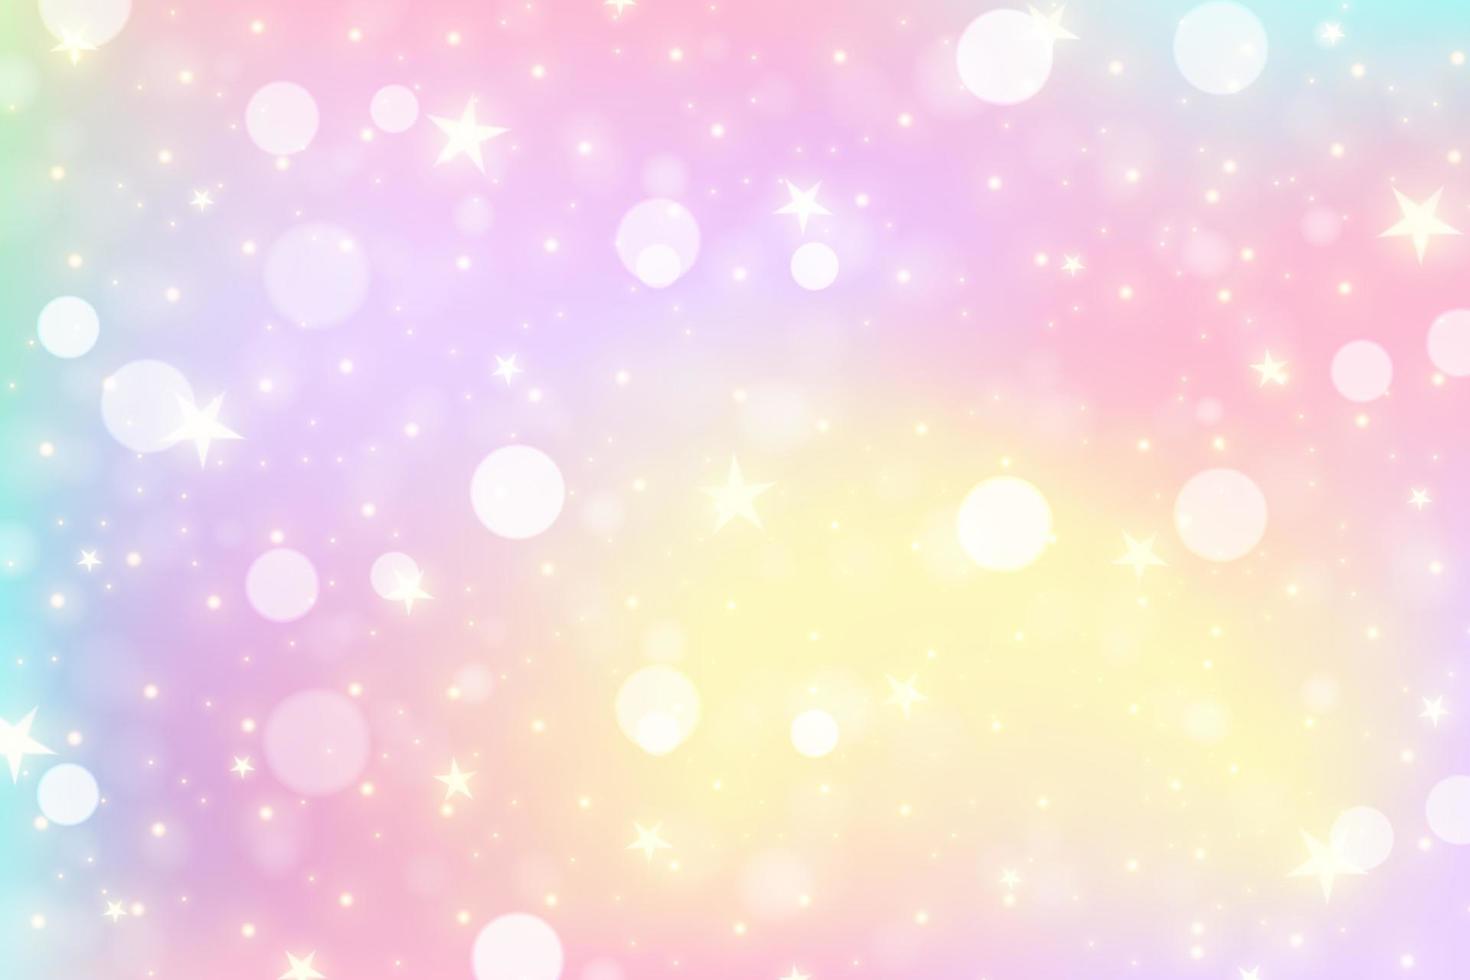 sfondo di unicorno arcobaleno. cielo di colore sfumato pastello con glitter. spazio e stelle magiche della galassia. modello astratto di vettore. vettore